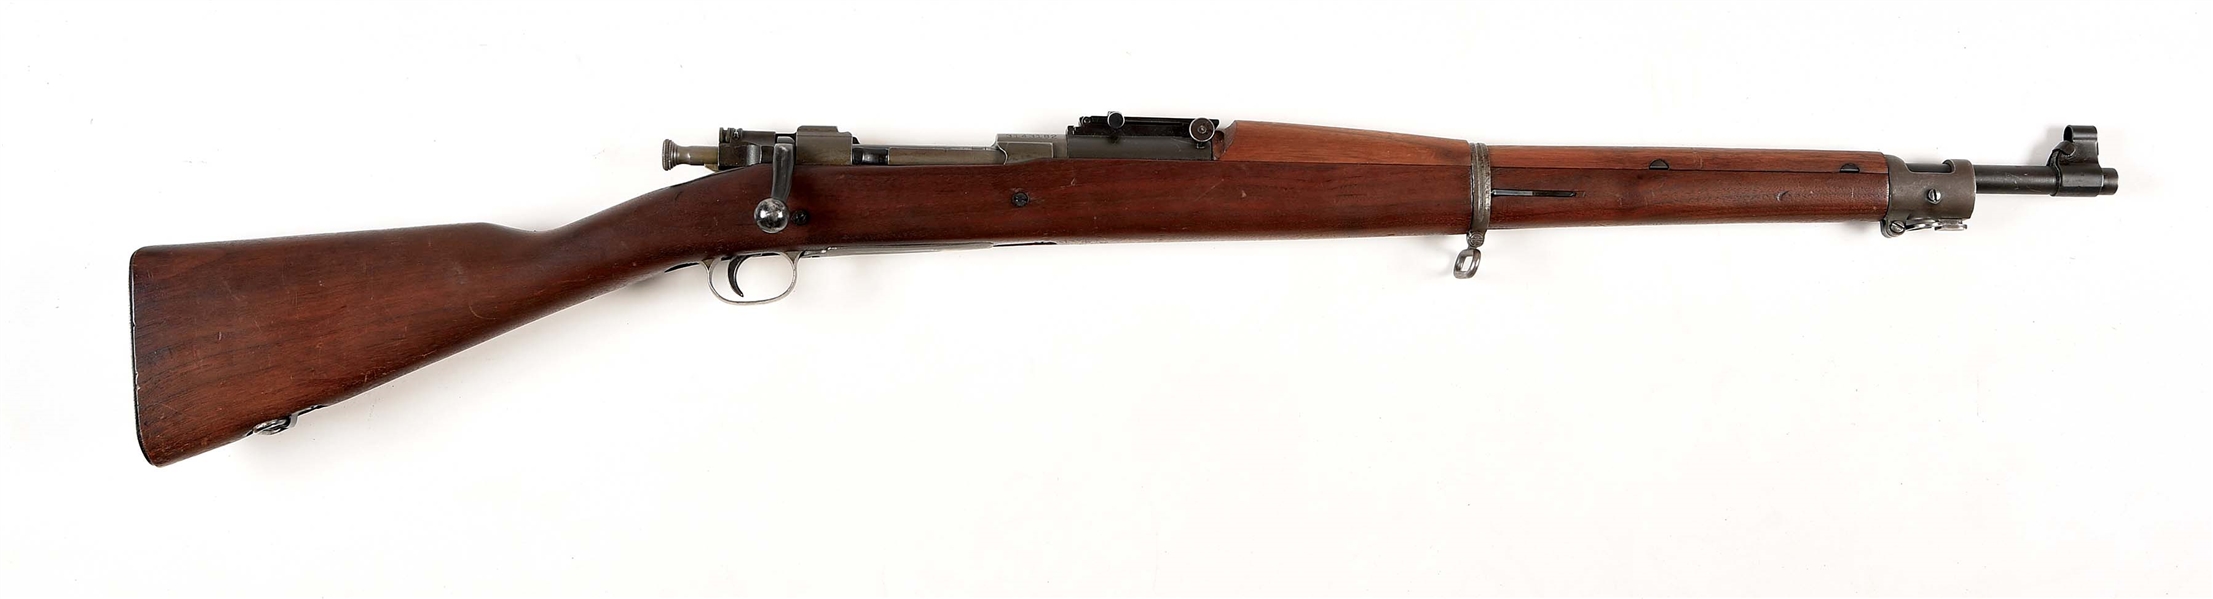 (C) REMINGTON M1903 BOLT ACTION RIFLE.